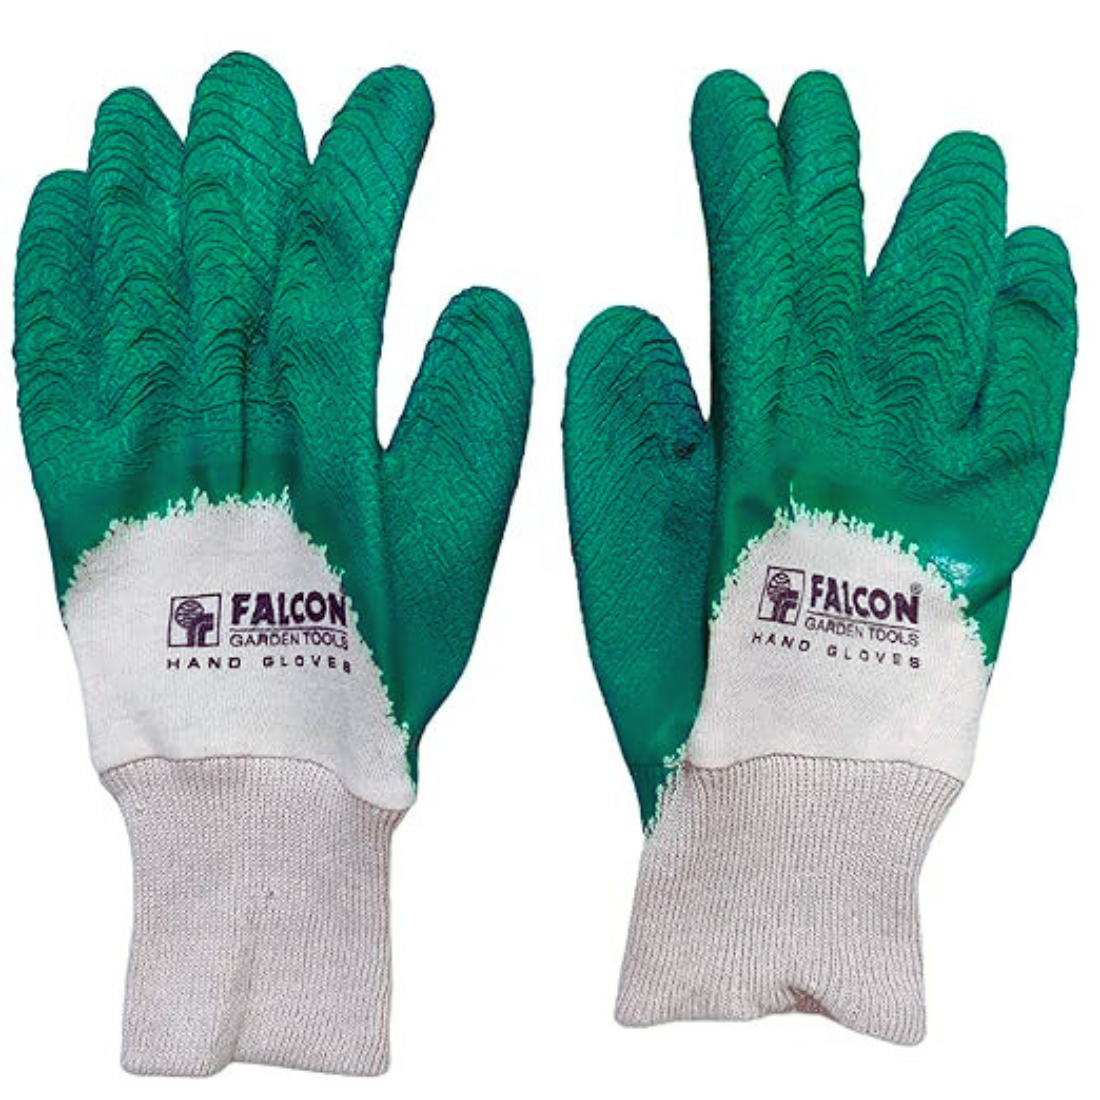 buy online rubber garden gloves, garden gloves, best garden gloves